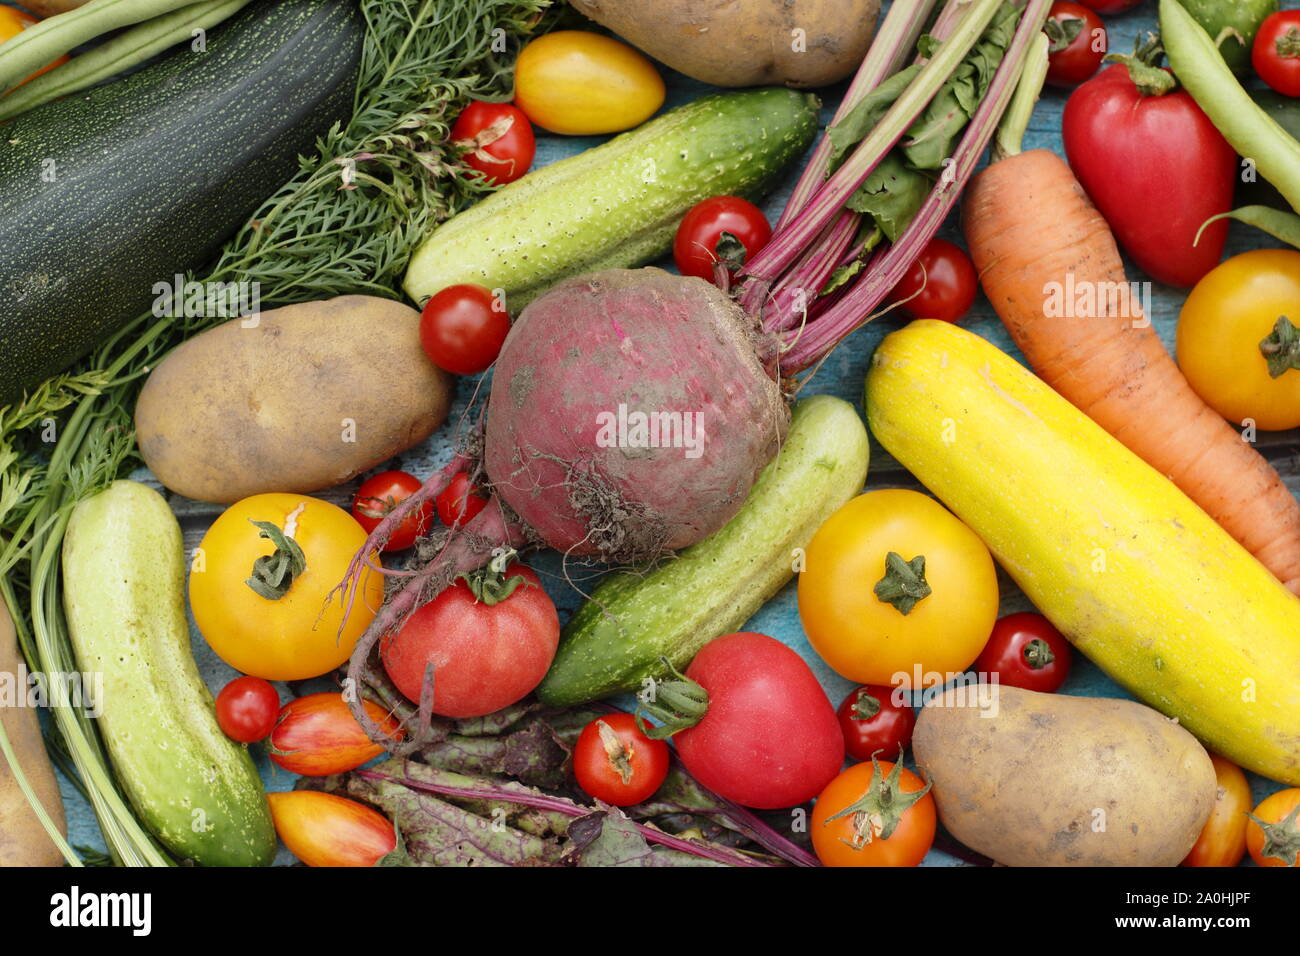 Frisch geerntete homegrown Bio Gemüse wie Zucchini, grüne Bohnen, rote Beete, Karotten, Kartoffeln, Tomaten, Gurken und Kohl. Großbritannien Stockfoto